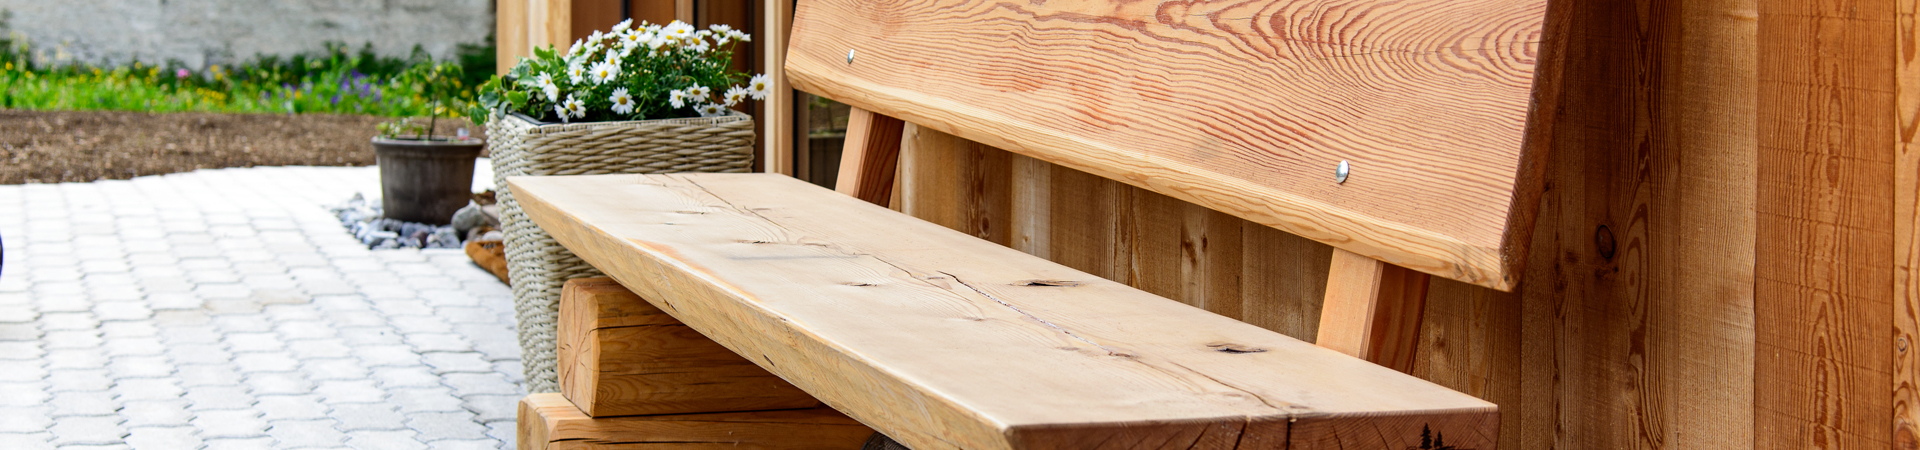 Holz für Tische und Bänke vom Bergholzzentrum Florinett in Bergün